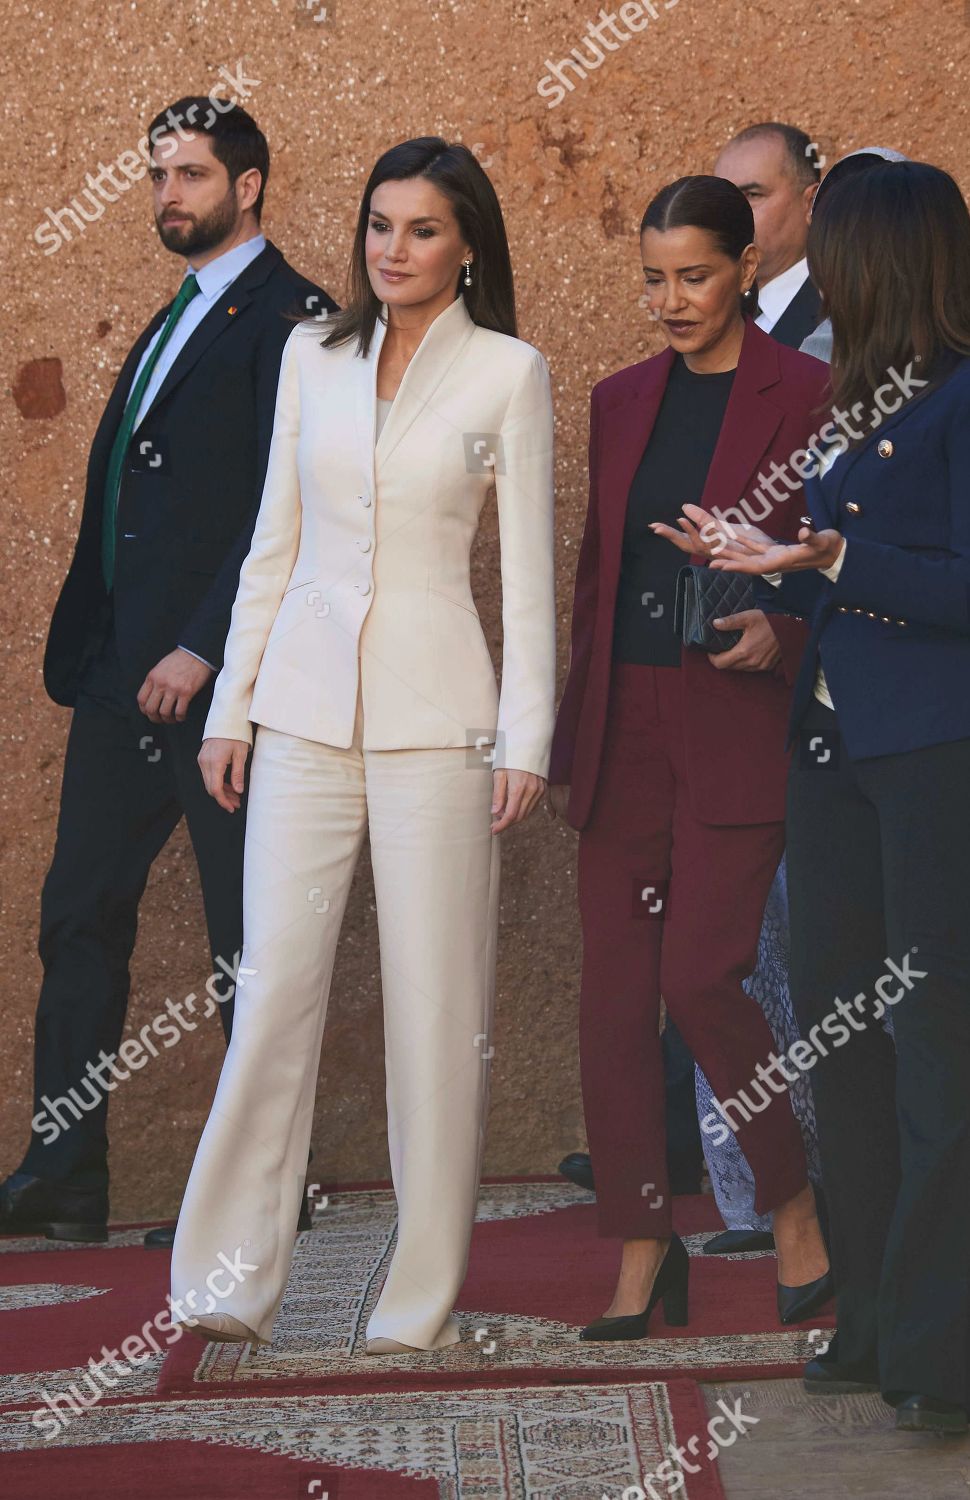 spanish-royals-visit-morocco-shutterstock-editorial-10106900k.jpg